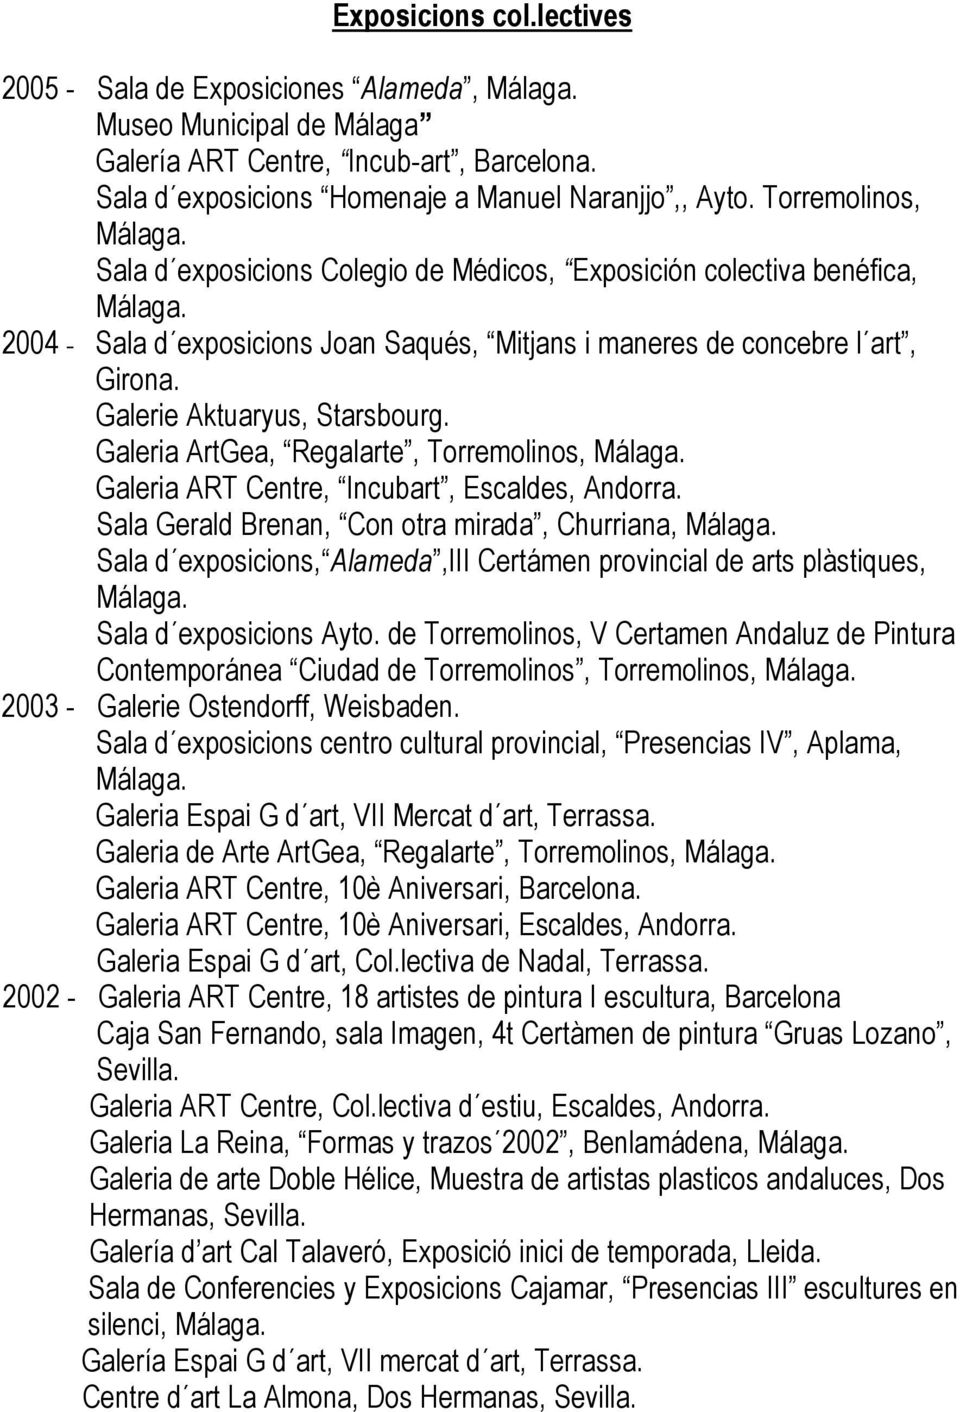 Galeria ArtGea, Regalarte, Torremolinos, Galeria ART Centre, Incubart, Escaldes, Andorra.